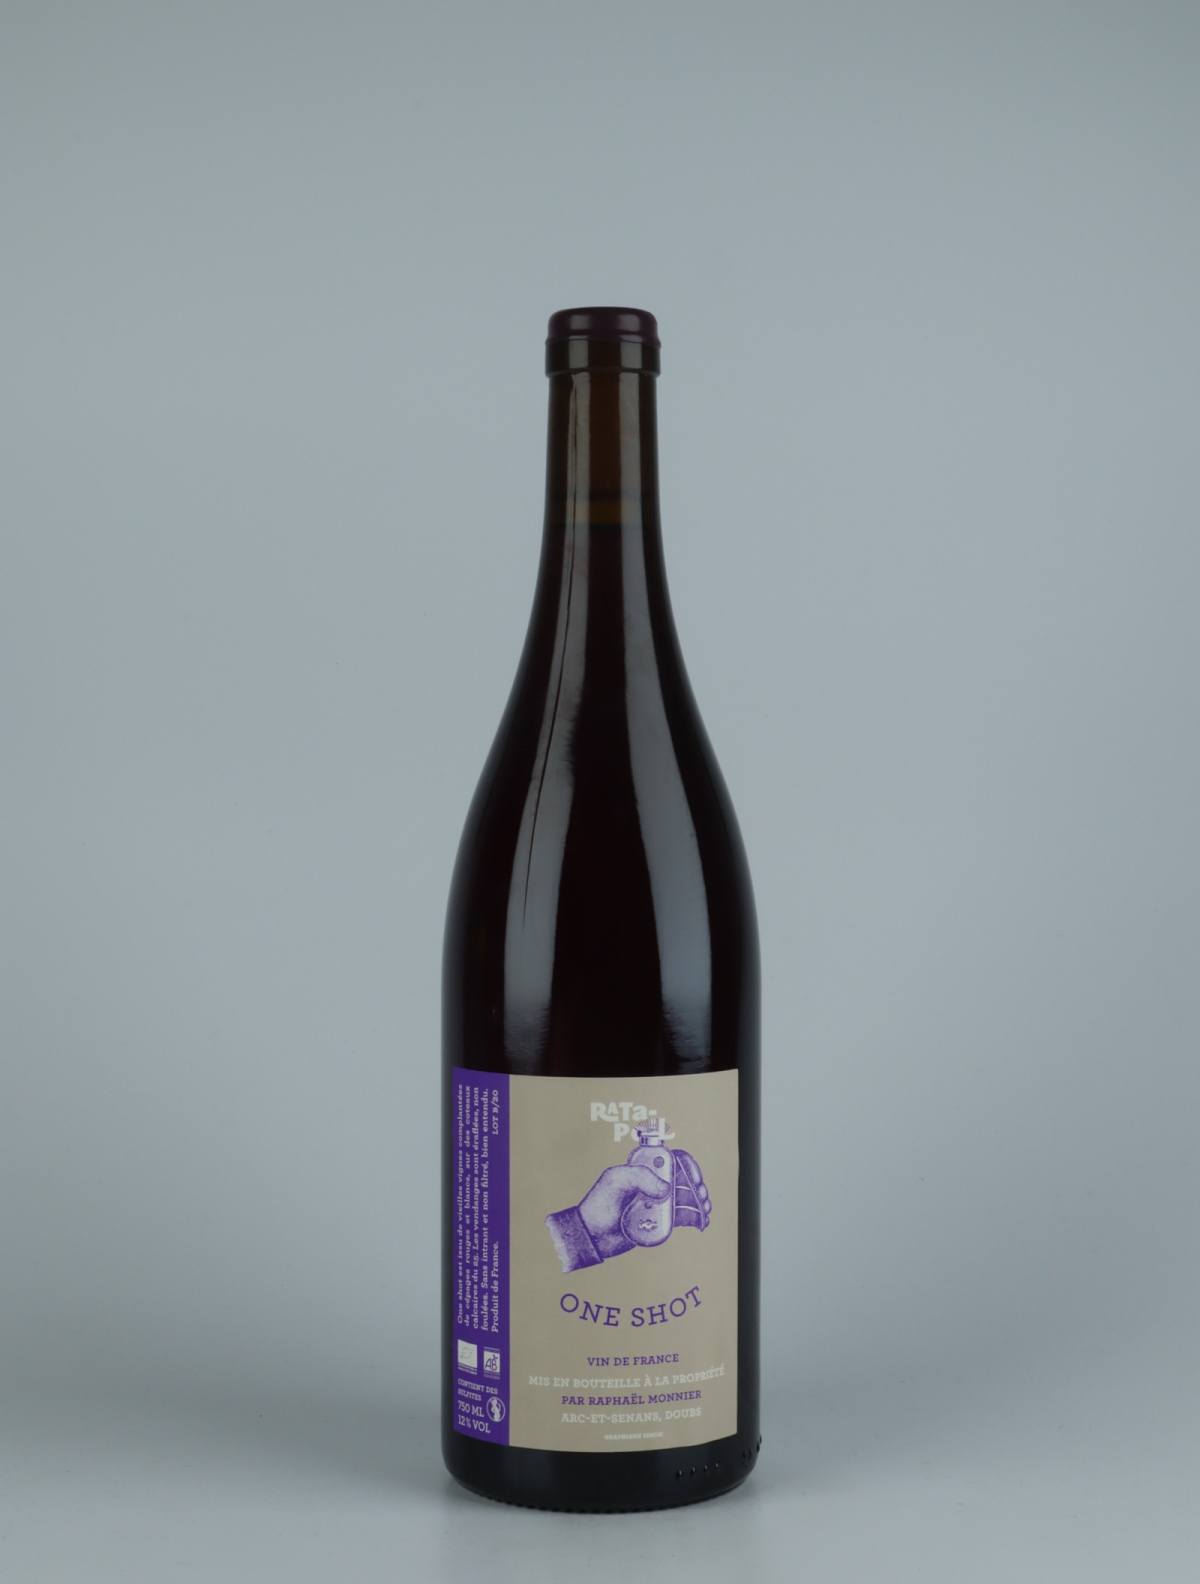 En flaske 2020 One Shot Rødvin fra Domaine Ratapoil, Jura i Frankrig